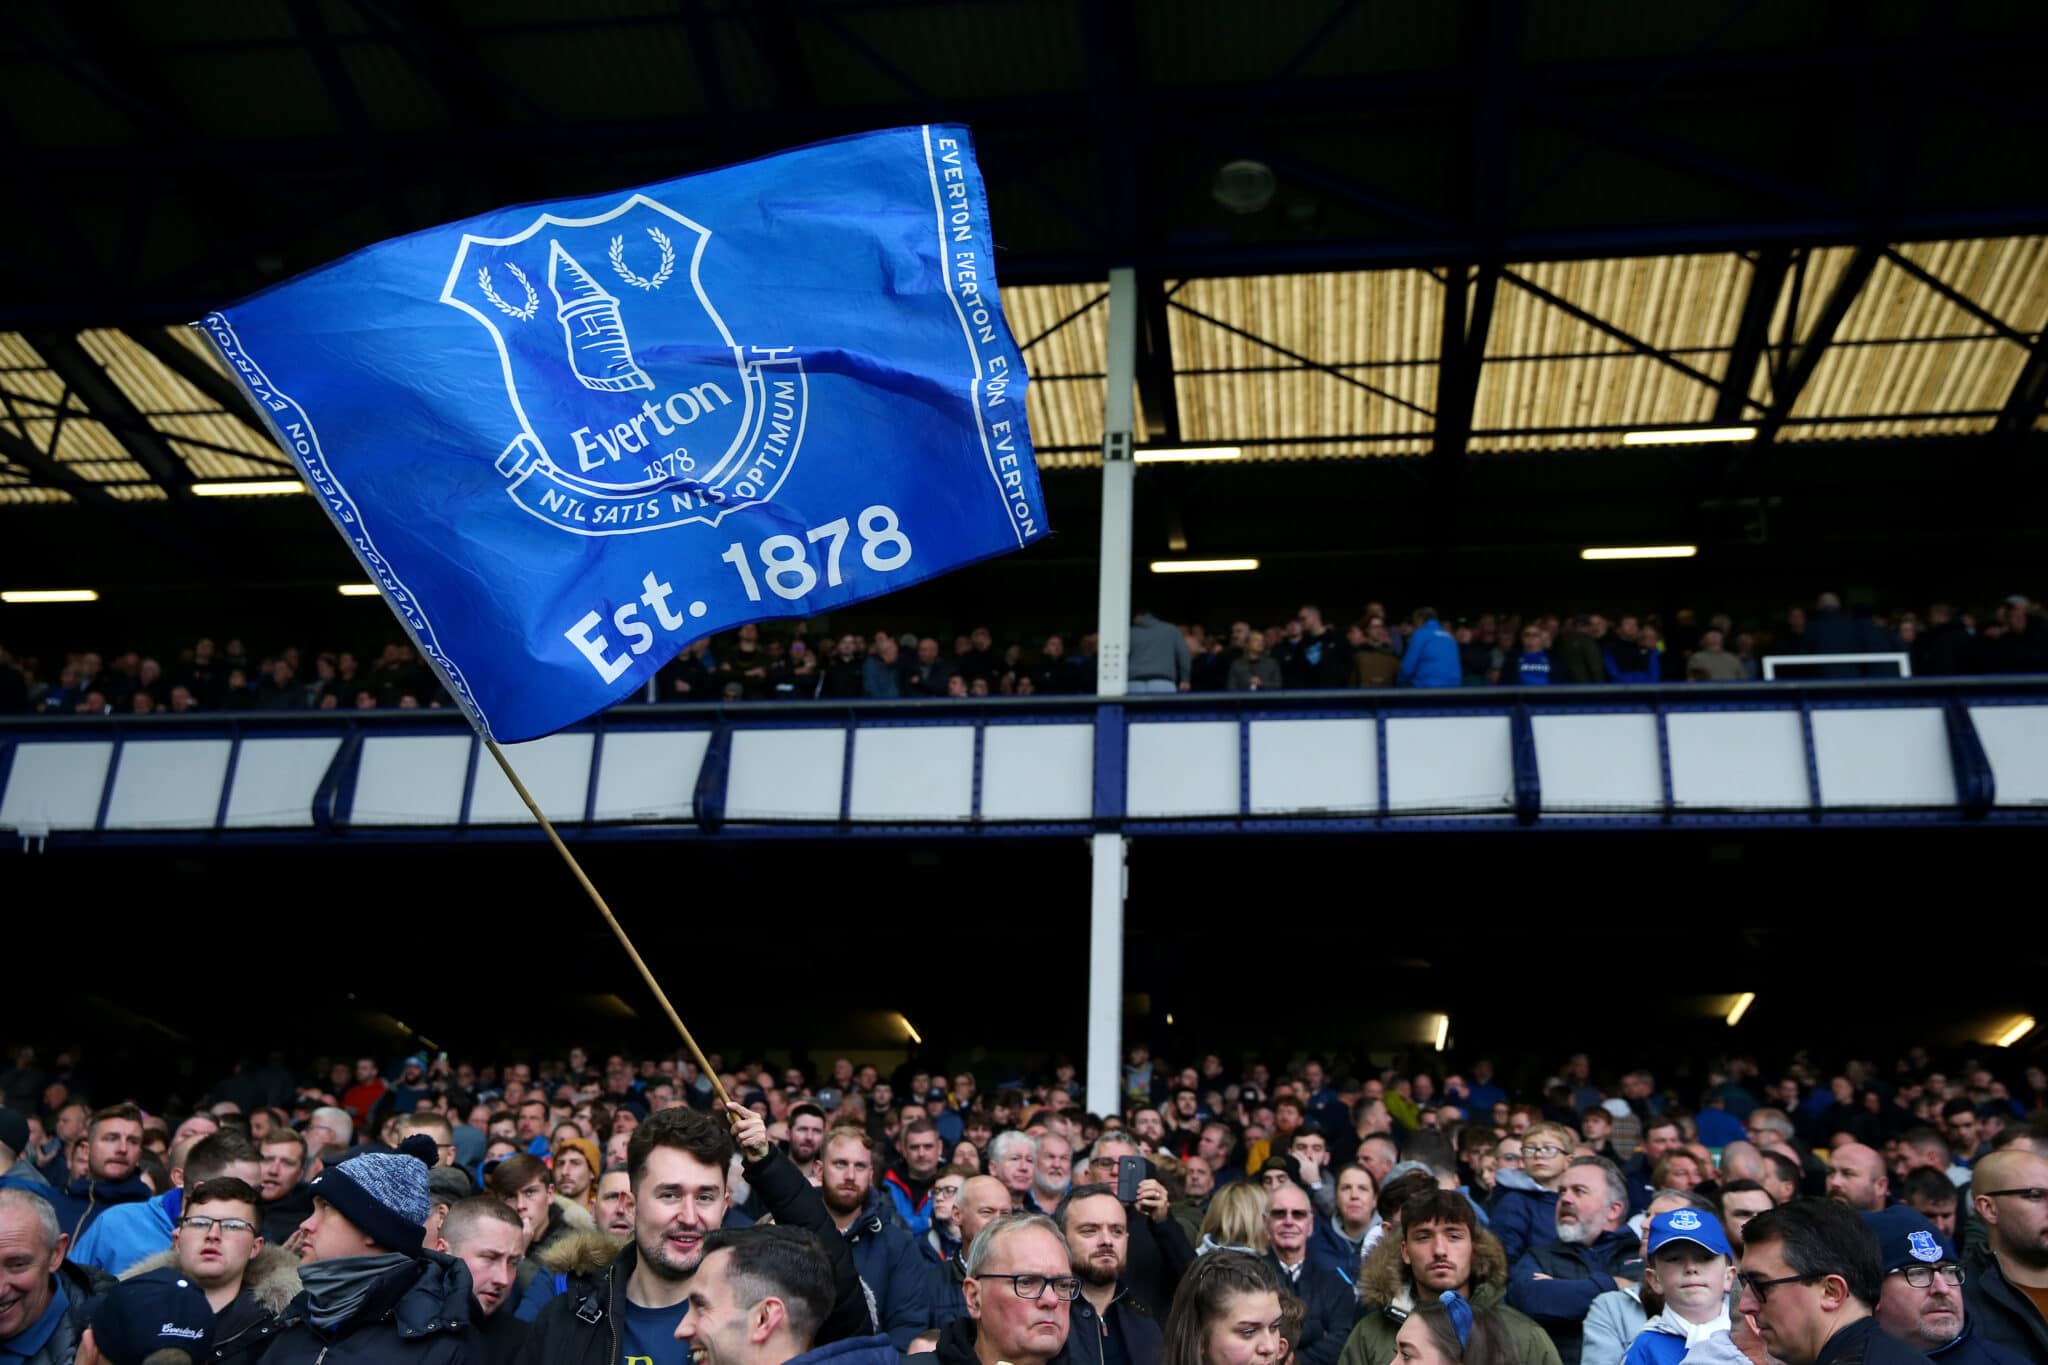 Liverpool: Des fans d’Everton détruisent du matériel dans le stade après la défaite (photos)